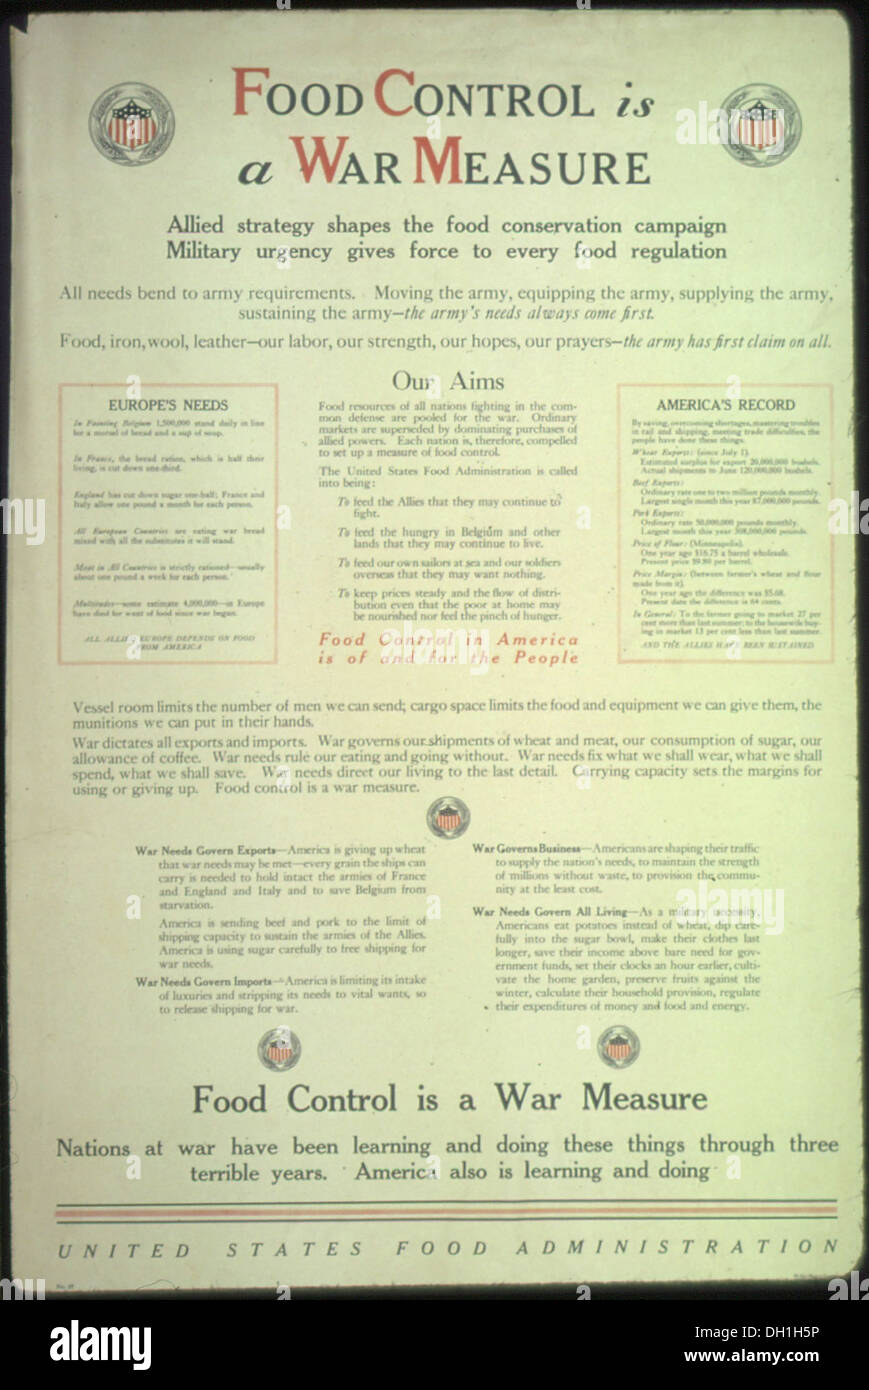 Lebensmittelkontrolle ist ein Krieg Maß... Nationen im Krieg wurden lernen und durch drei schrecklichen Jahre tun. Amerika auch 512509 Stockfoto